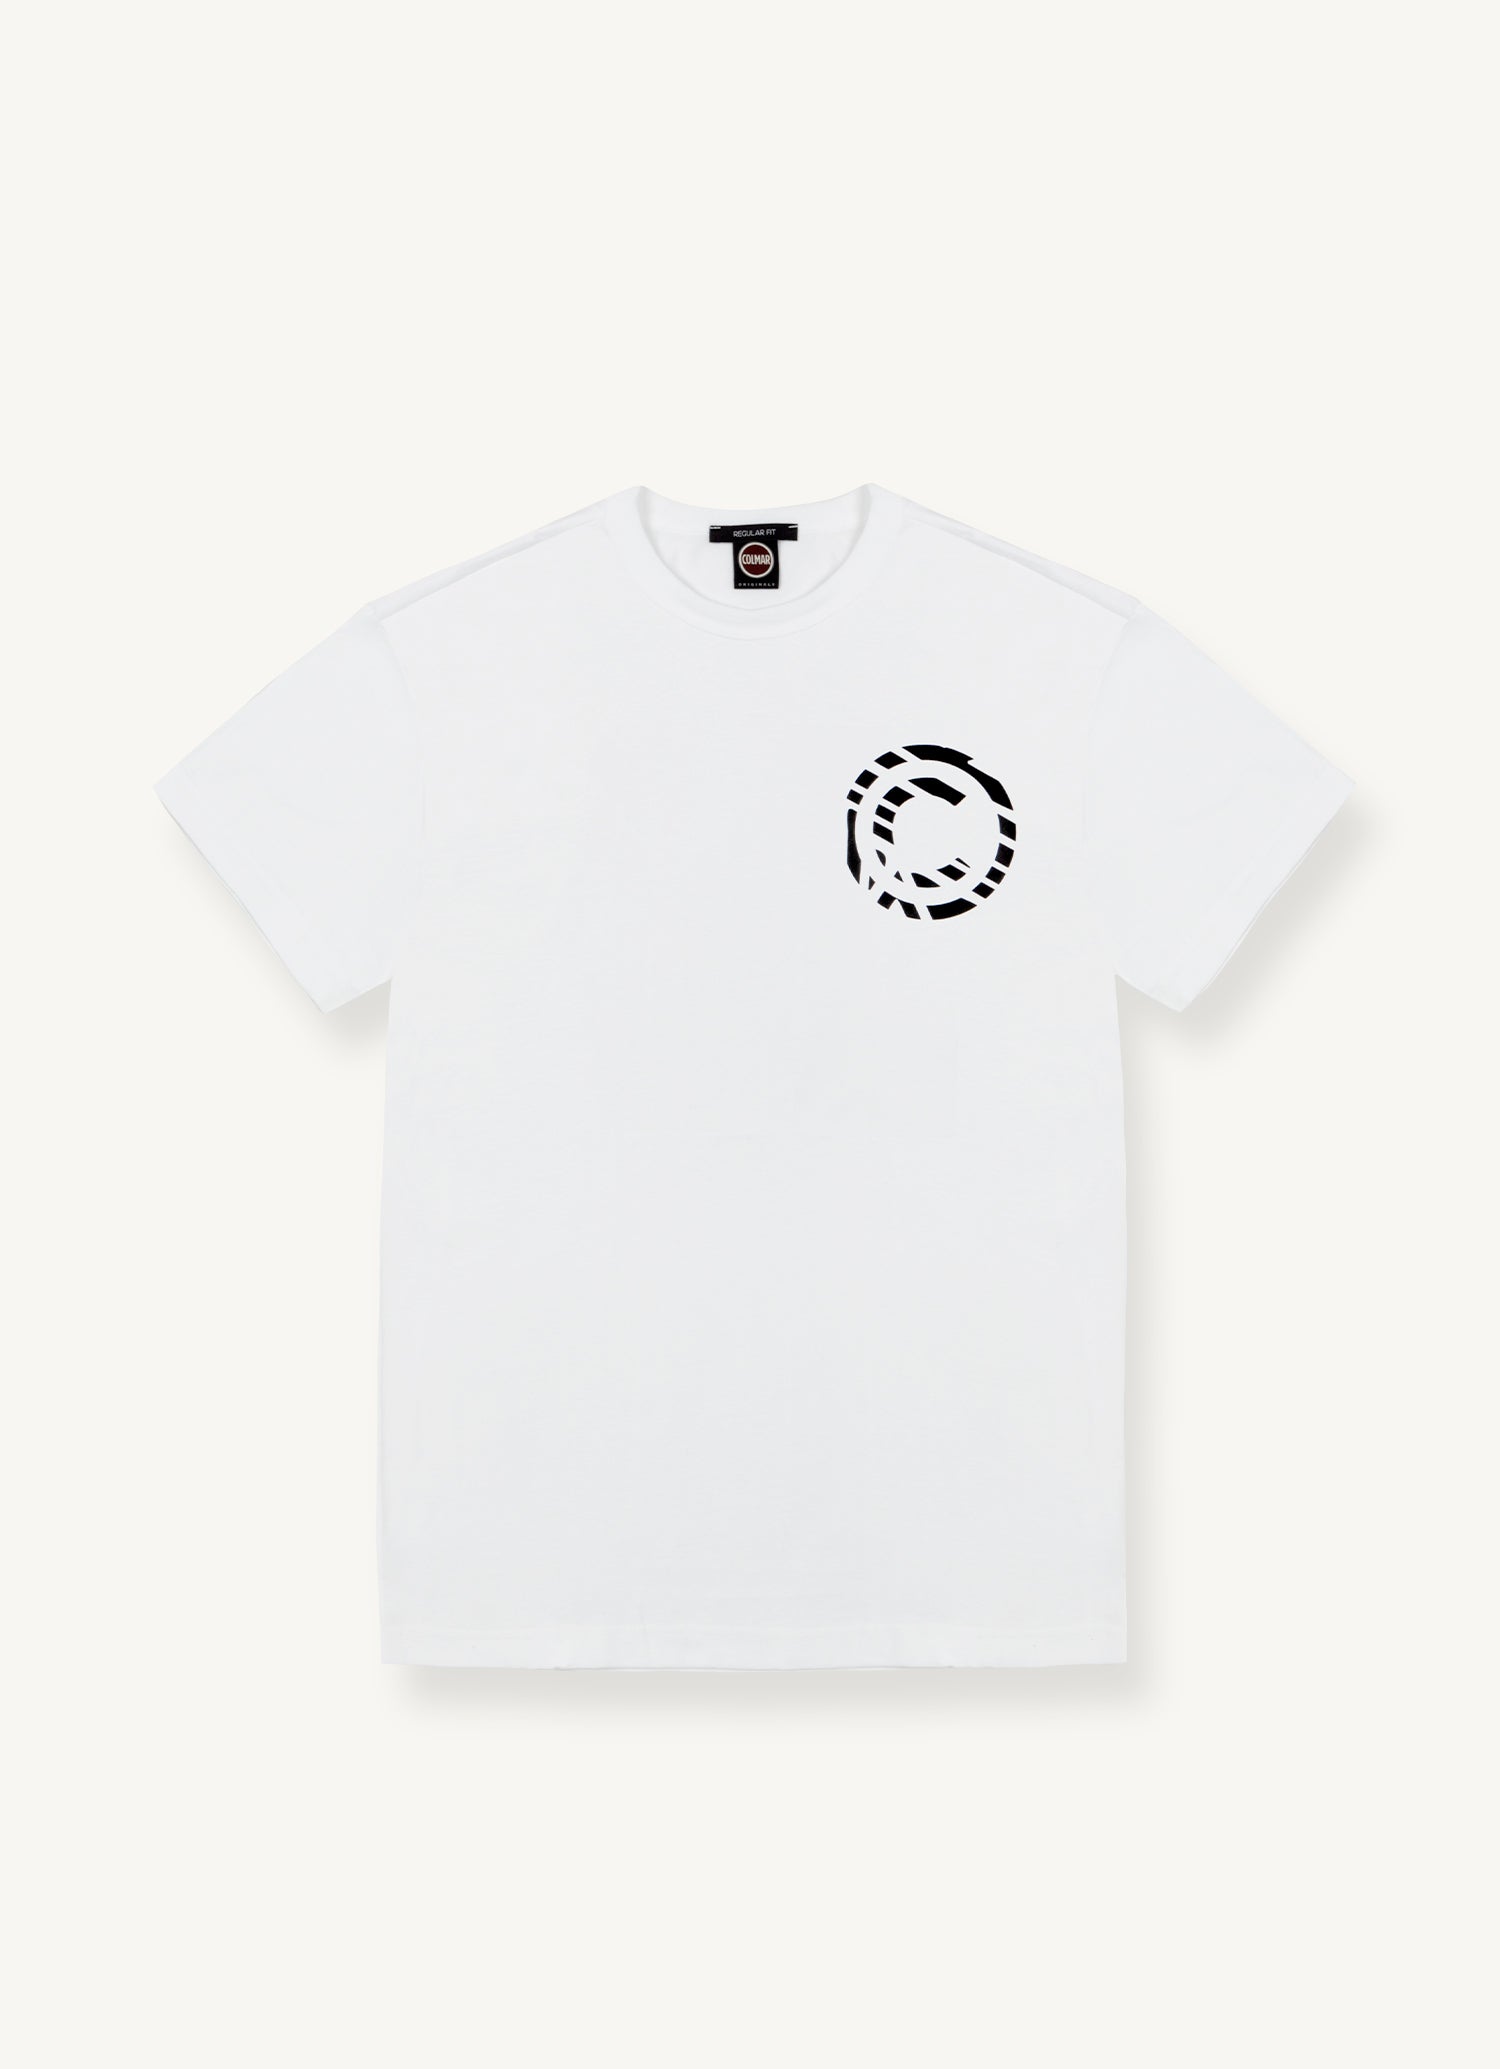 Colmar T-Shirt Uomo Frida-Bianco